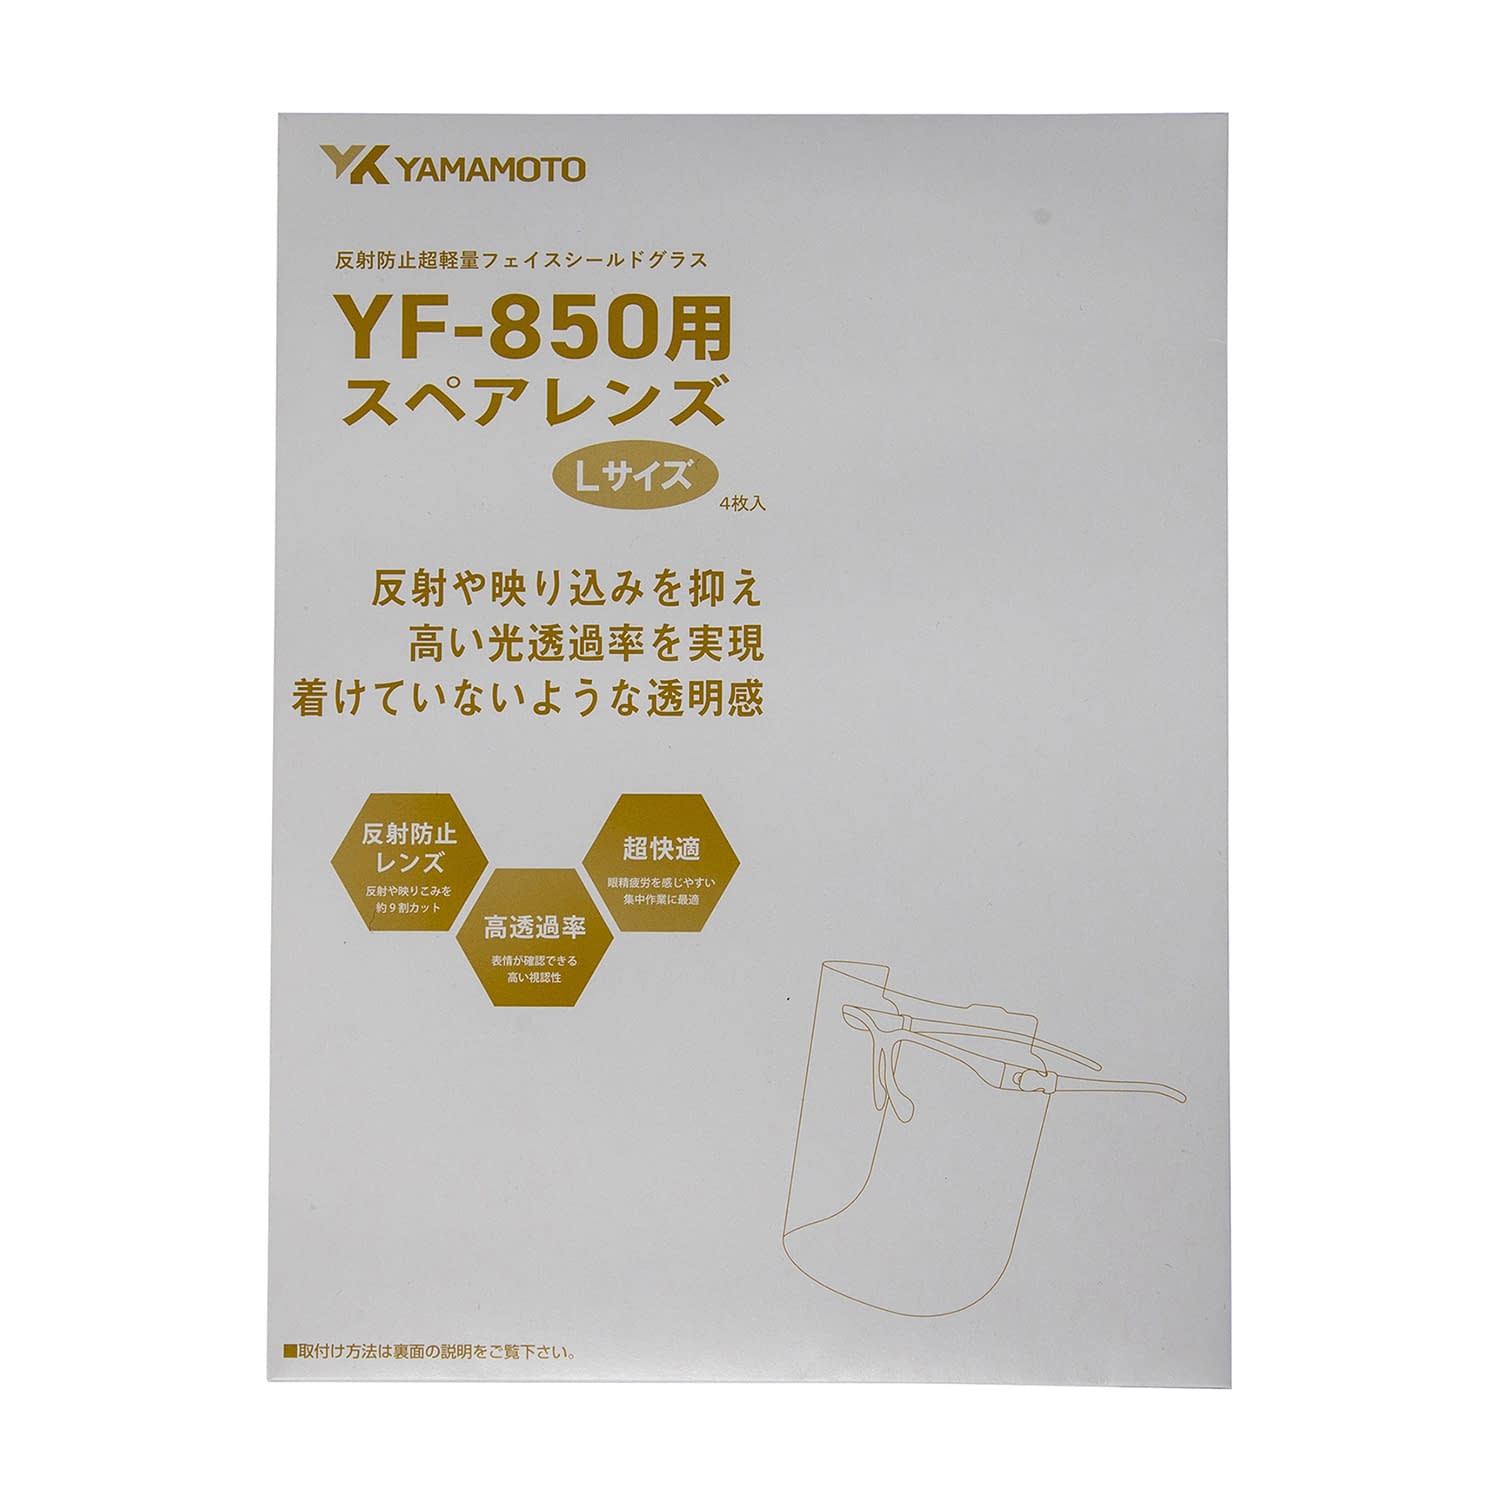 山本光学 YAMAMOTO ハイスペックモデル YF-850S 交換レンズ 反射防止 超軽量 20枚入り目を重点的に保護するタイプ スペア - 2